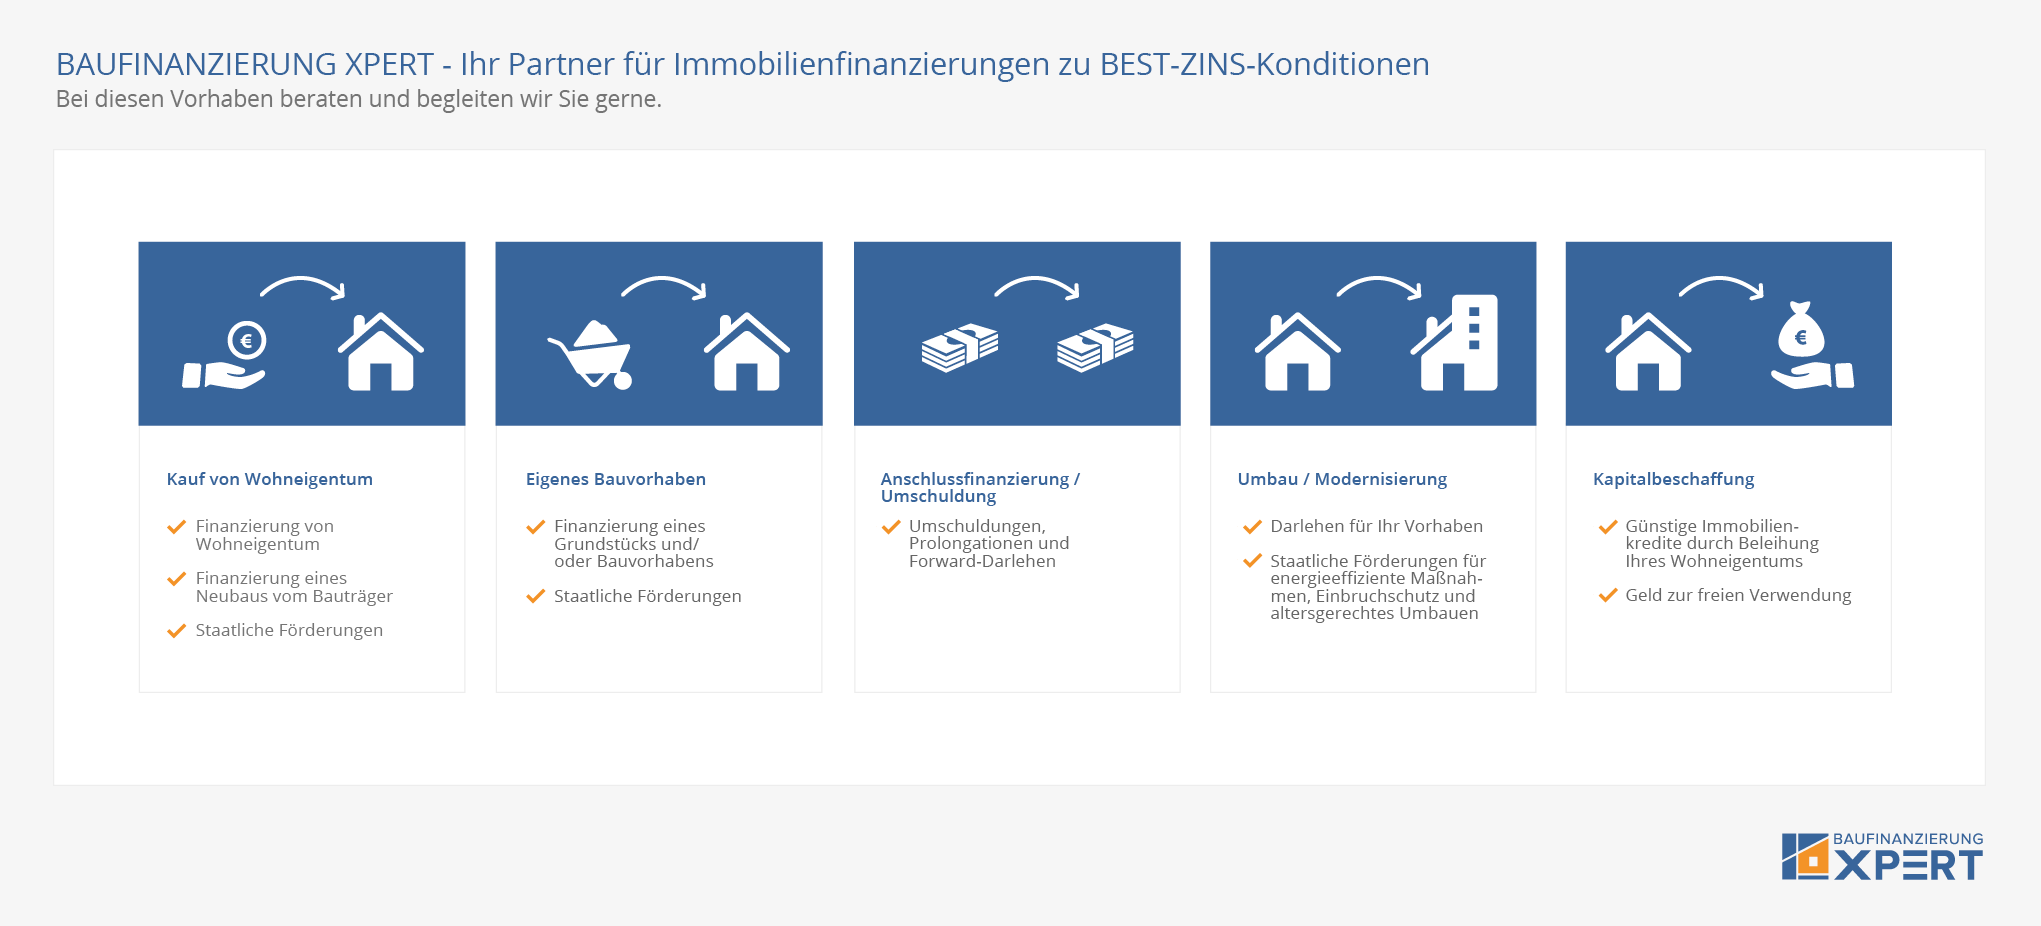 baufinanzierung-xpert-immobilienfinanzierung-leistungsuebersicht-infografik